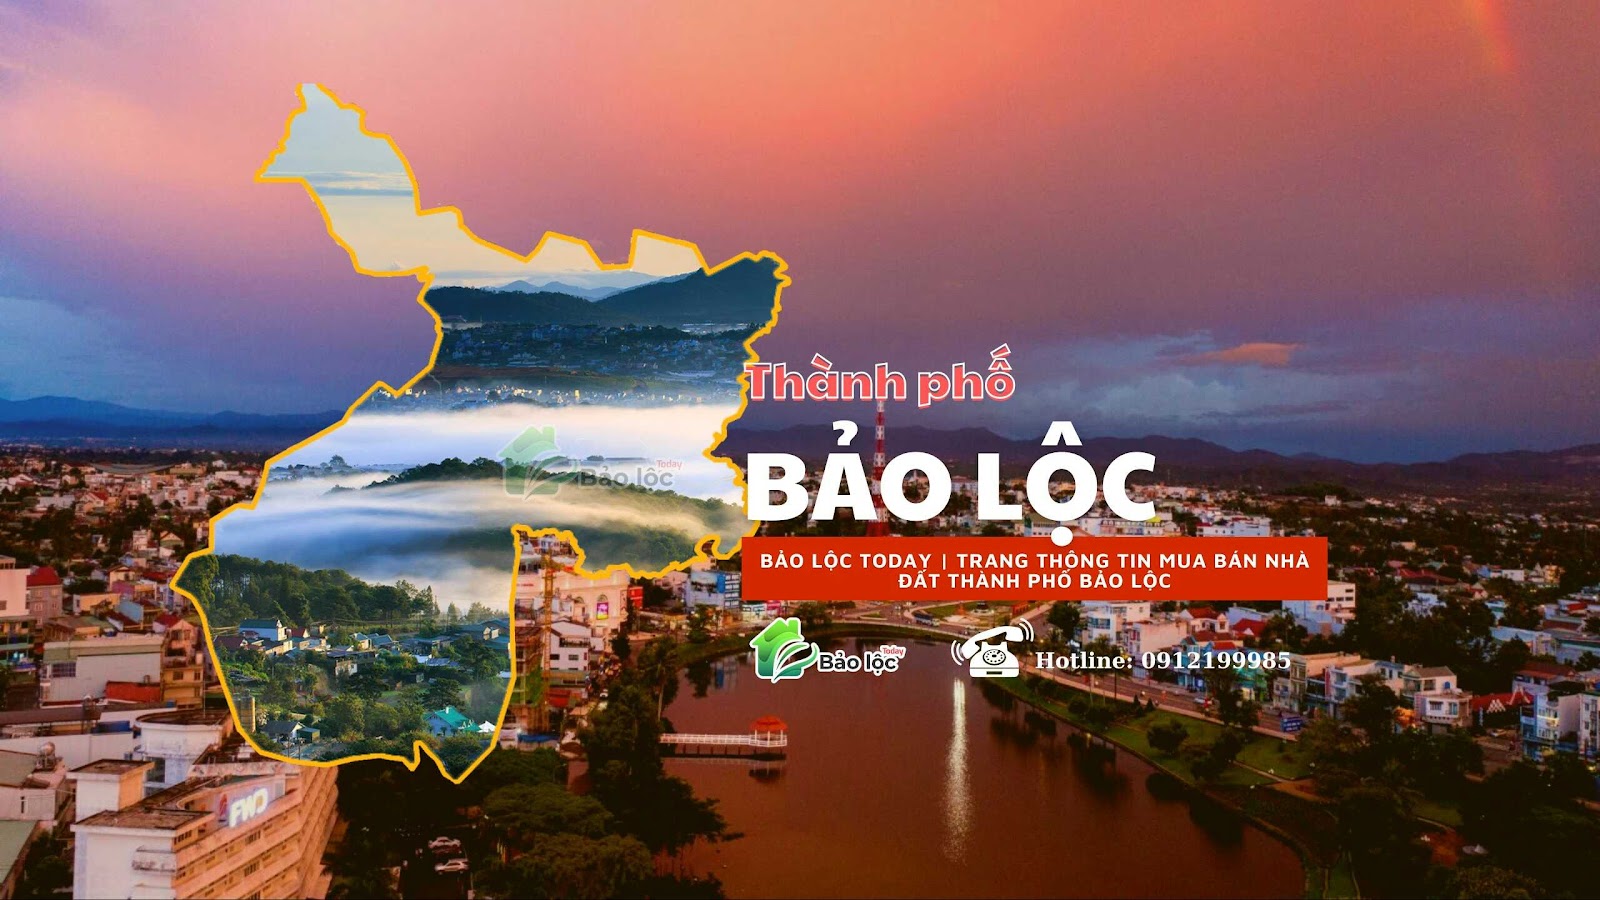 Giới thiệu về thành phố Bảo Lộc, Lâm Đồng